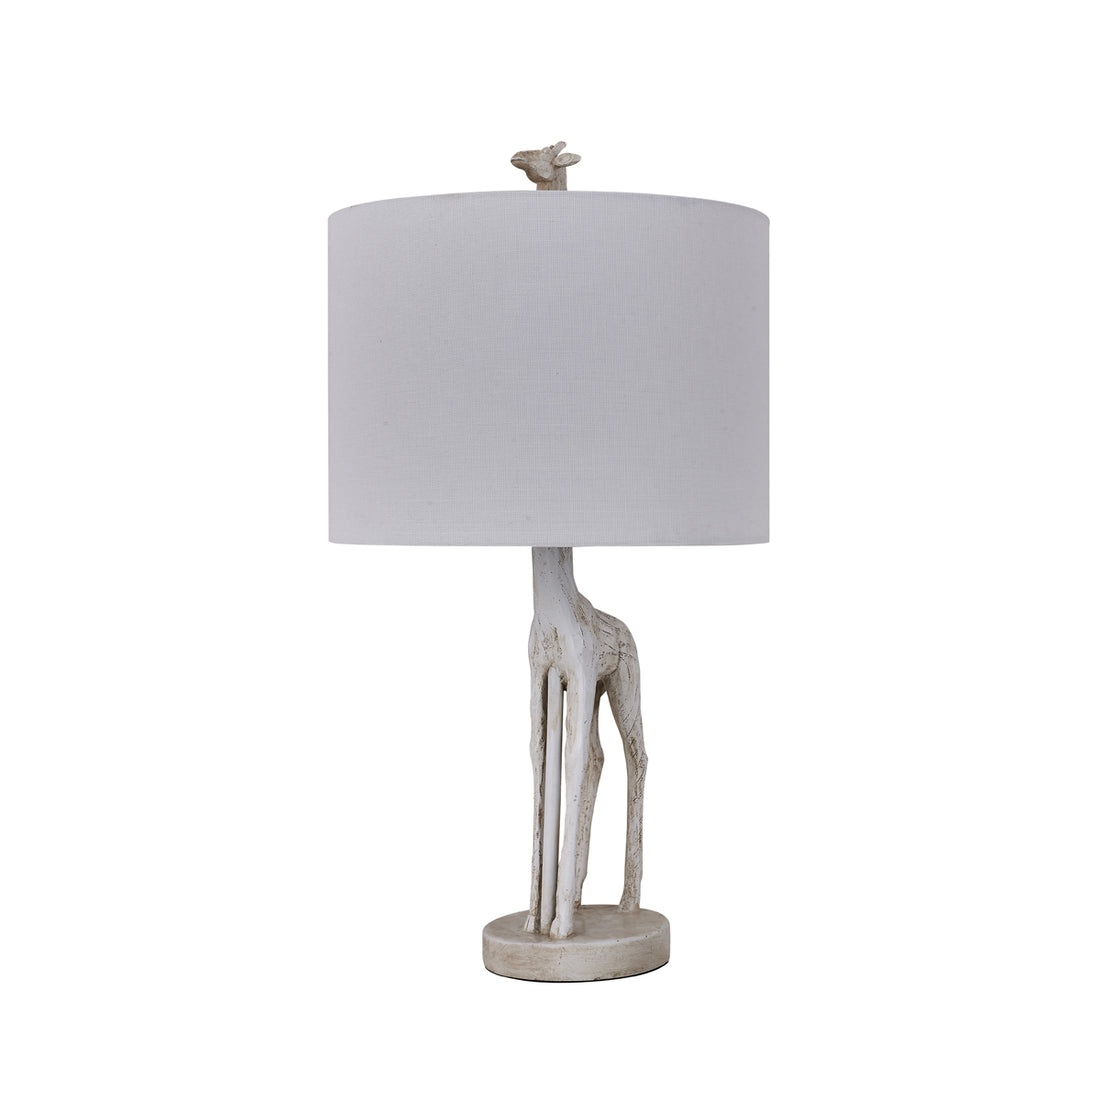 Giraffe White on White Table Lamp